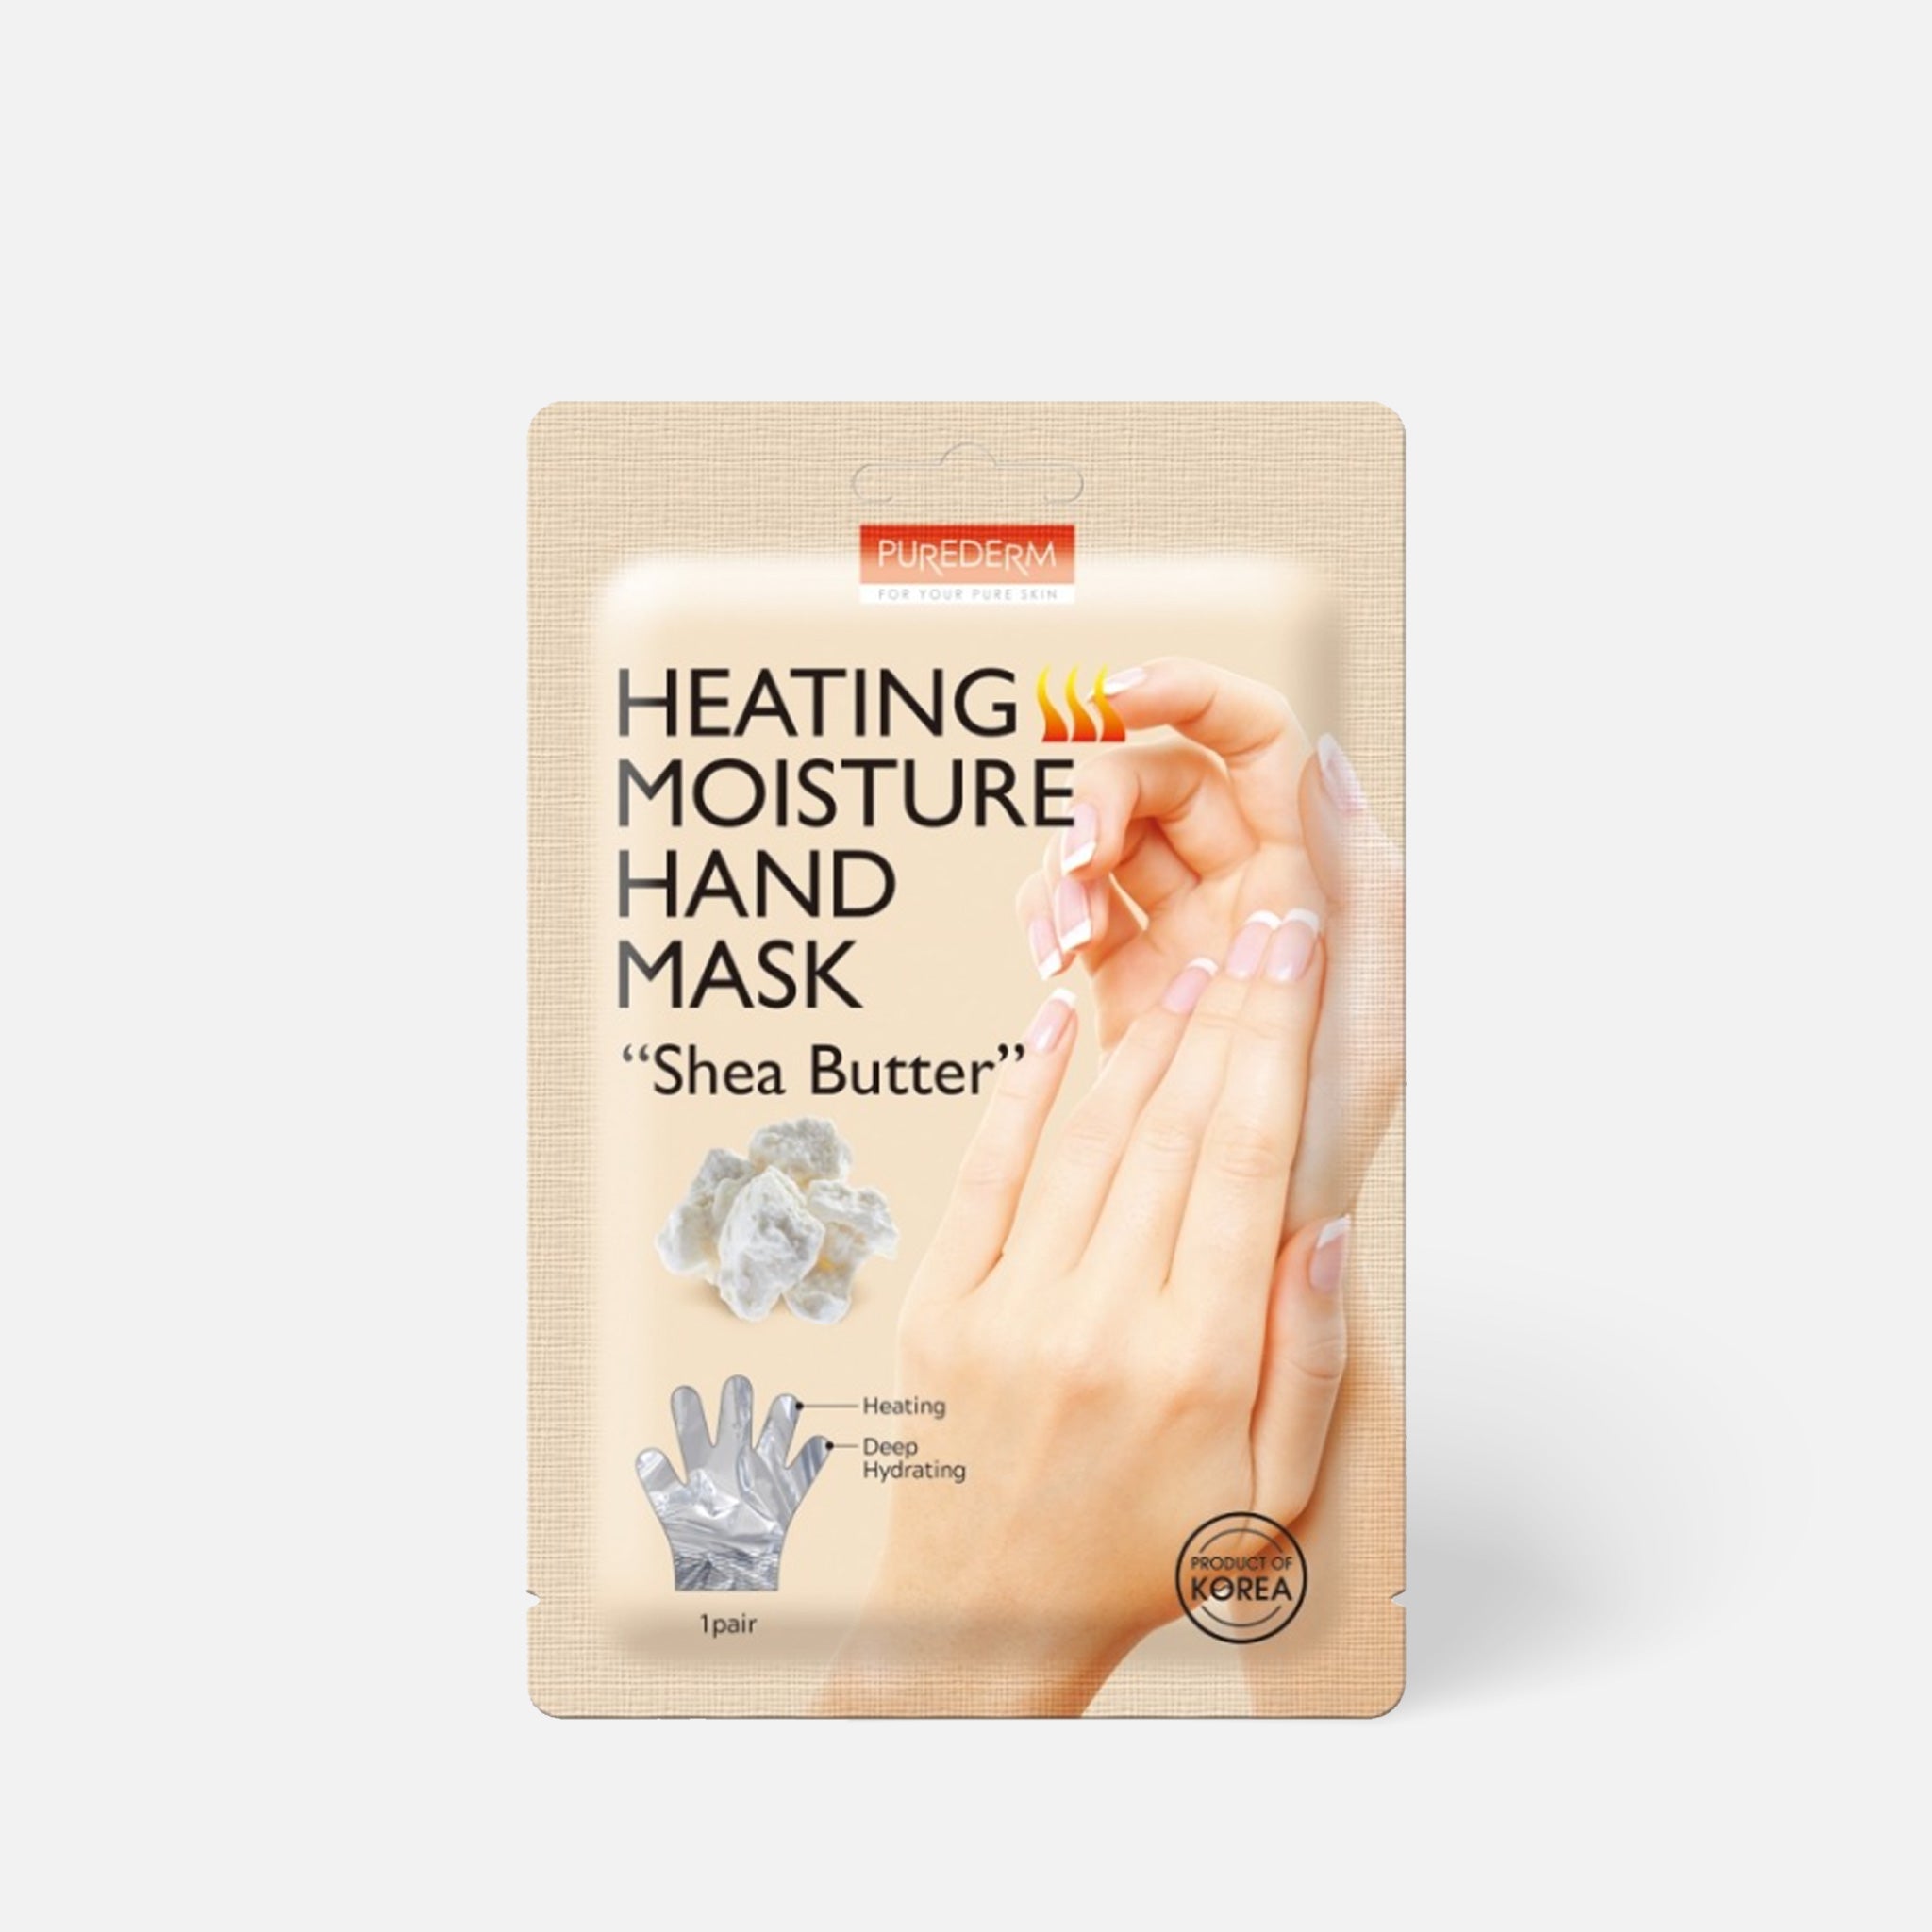 PUREDERM Heating Moisture Hand Mask Shea Butter